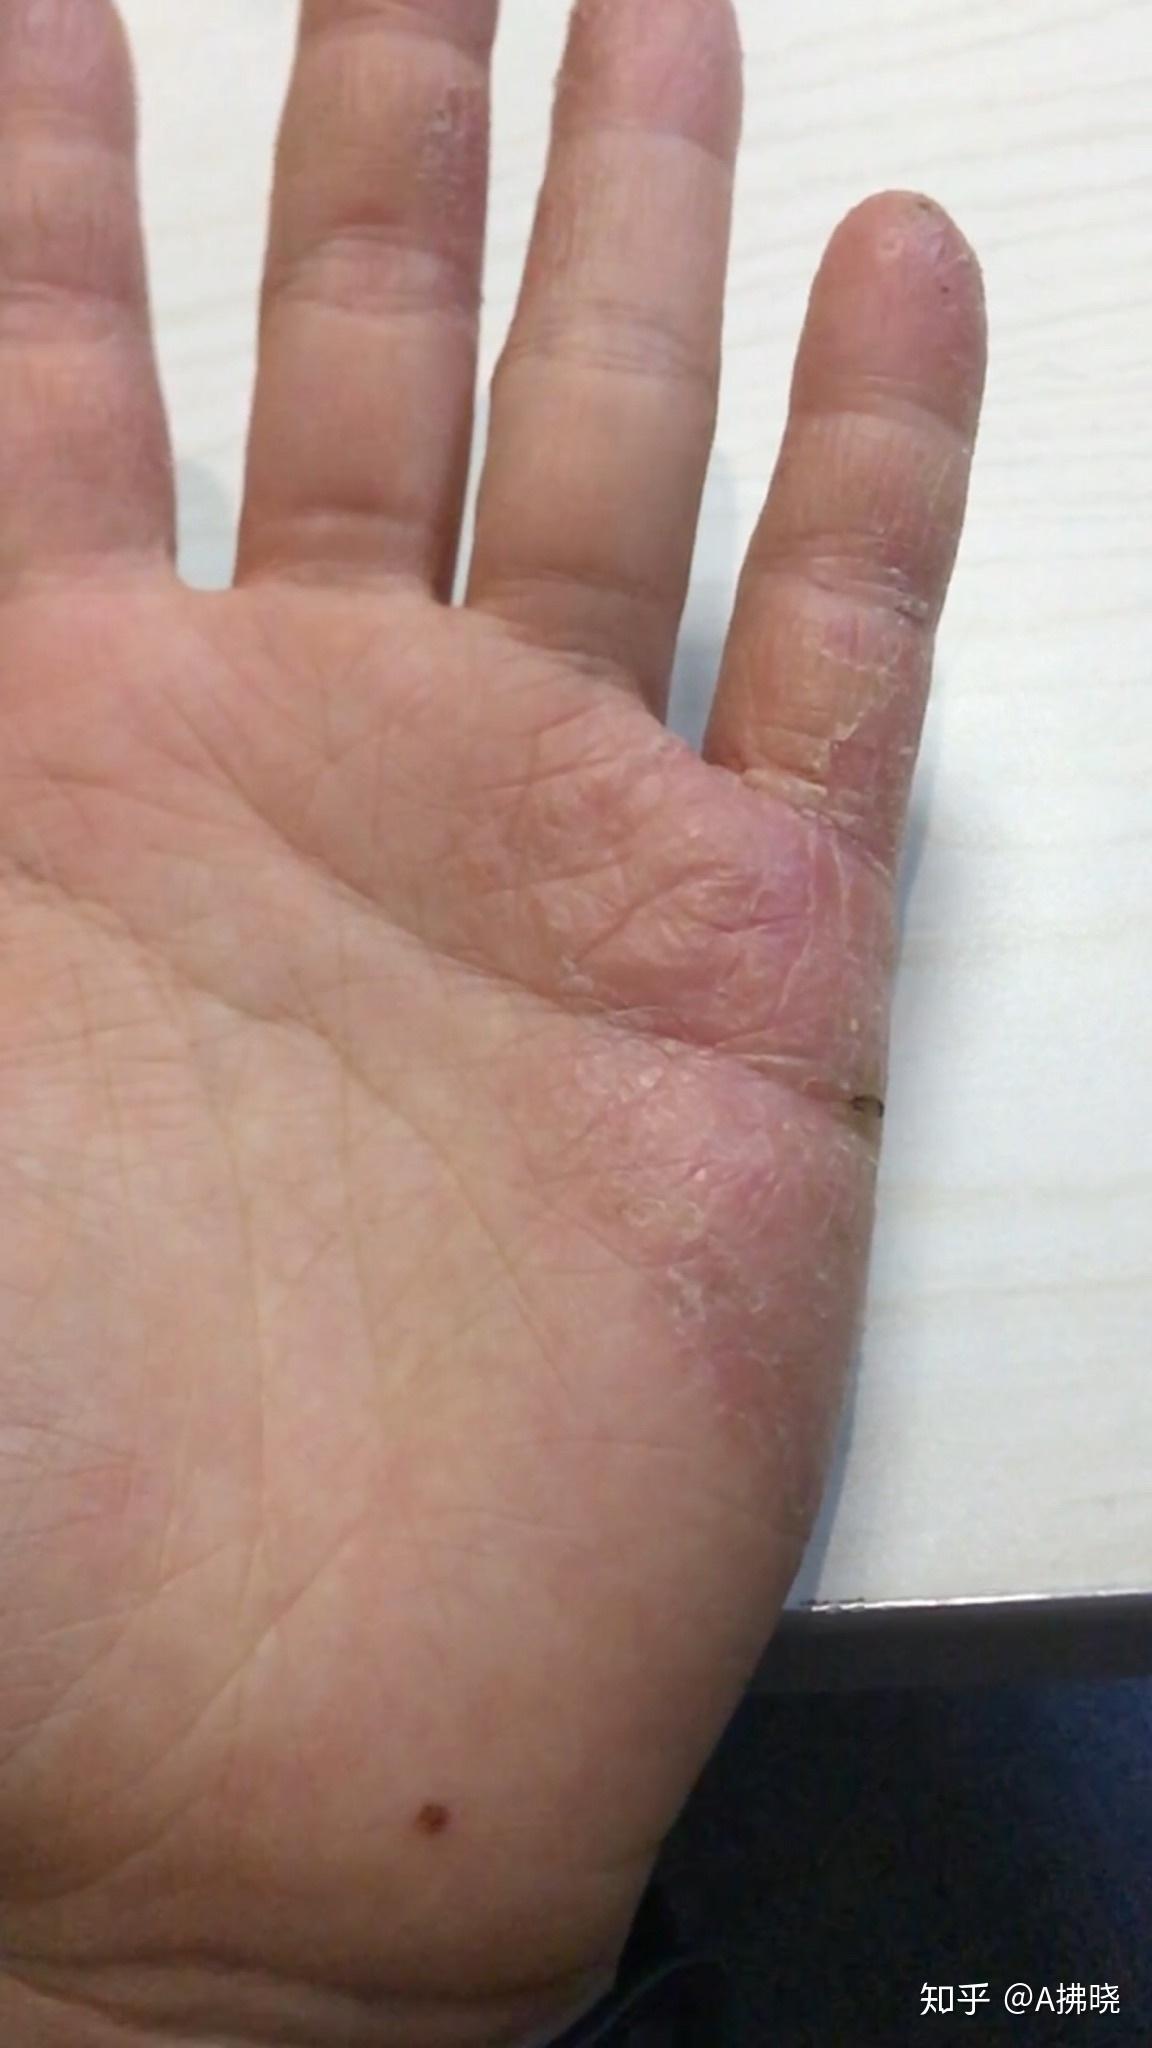 手指汗疱疹 治疗方法图片